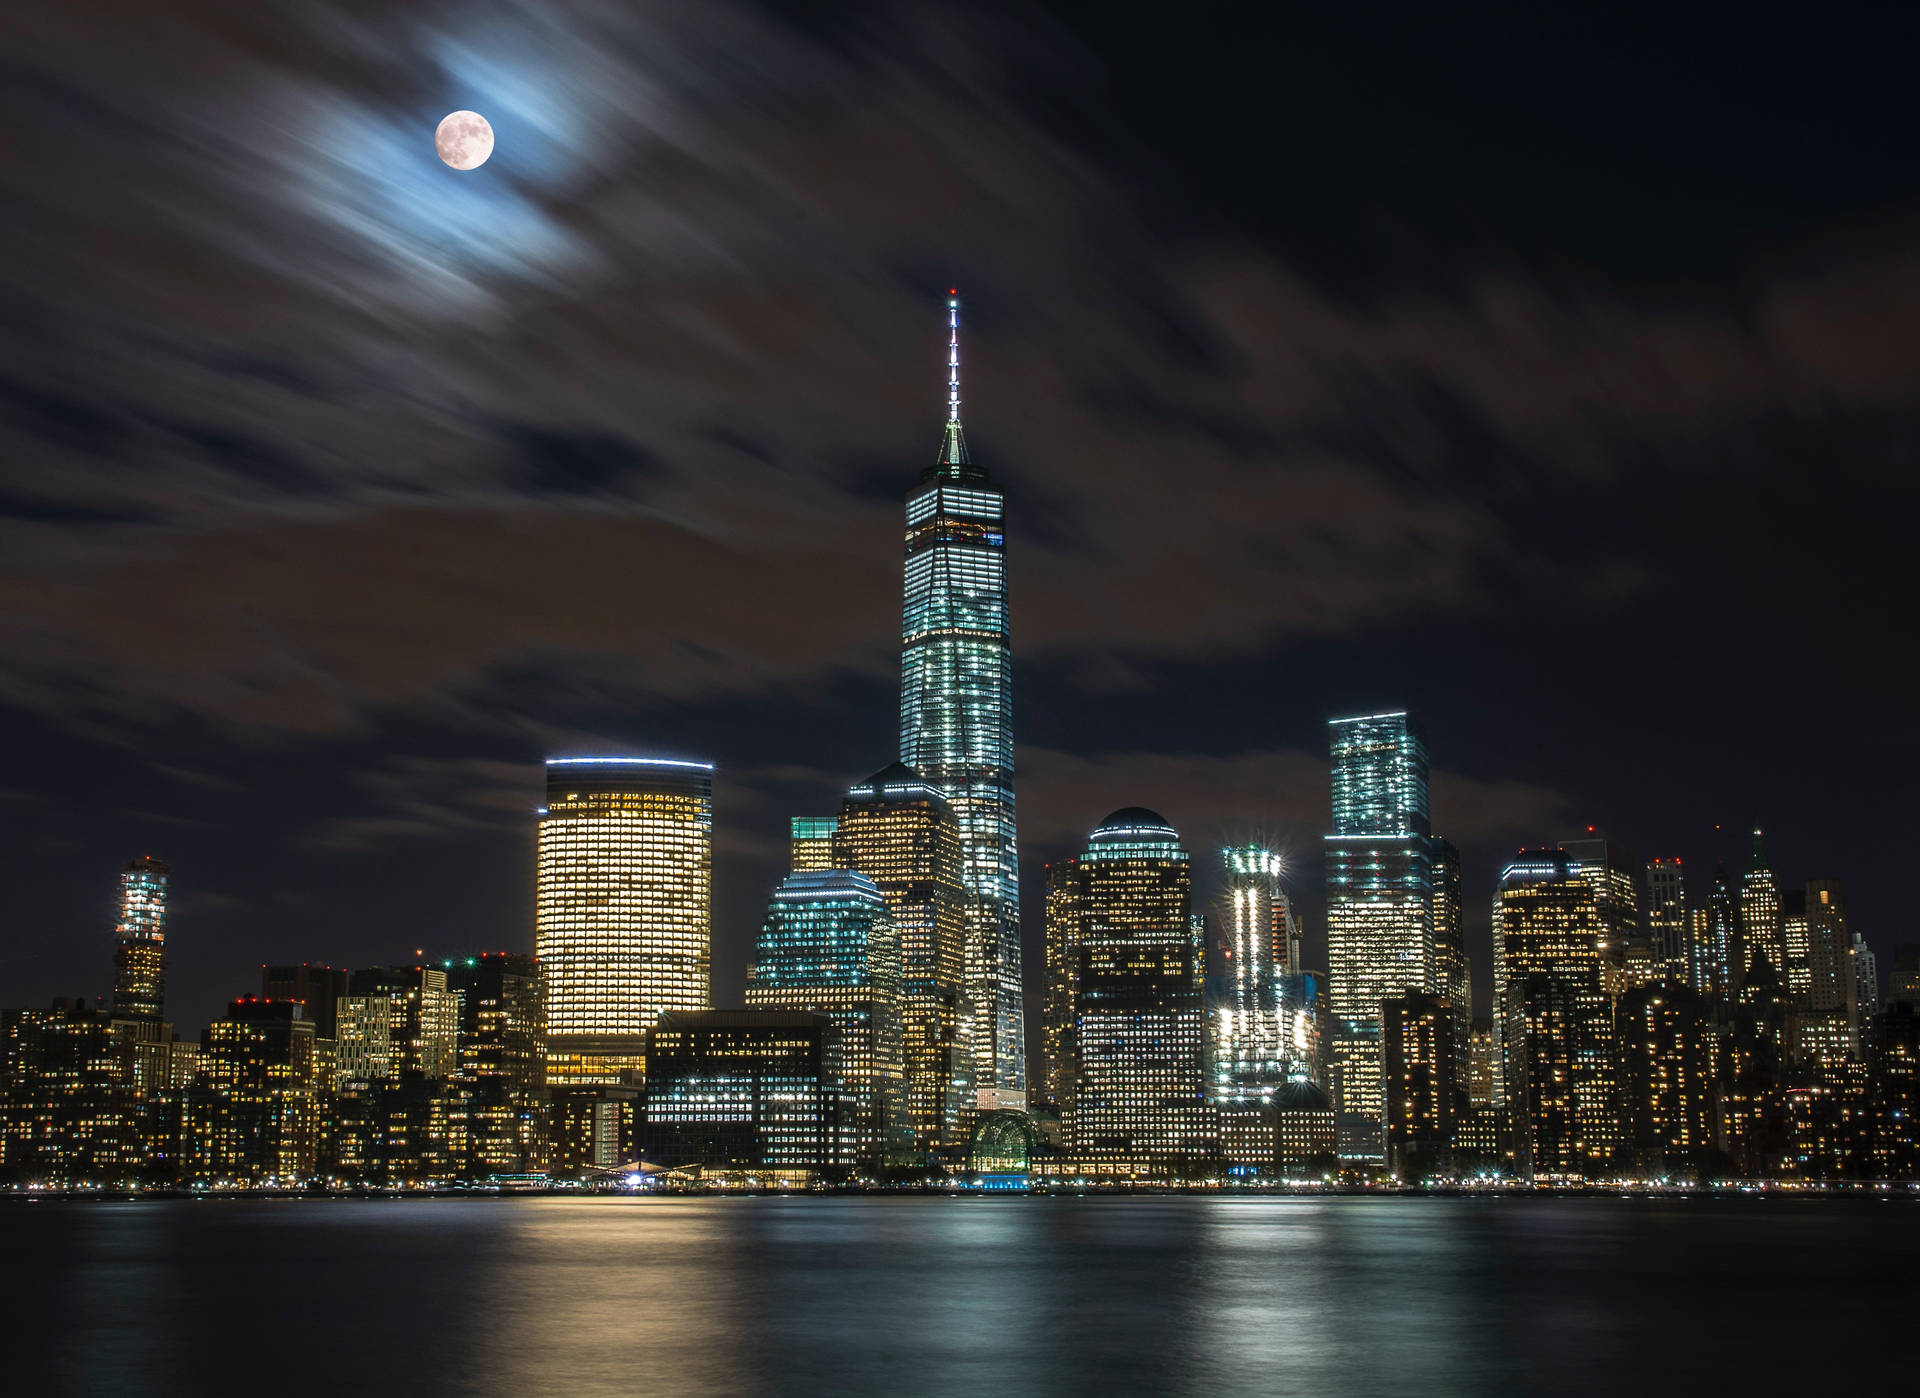 Với hình nền cảnh vật New York, bạn sẽ có cơ hội khám phá những góc khuất tuyệt đẹp của thành phố với ánh trăng super moon lung linh. Tạo nên không gian làm việc hay sinh hoạt tuyệt vời trên màn hình điện thoại của bạn với những hình nền cảnh vật đẹp nhất!